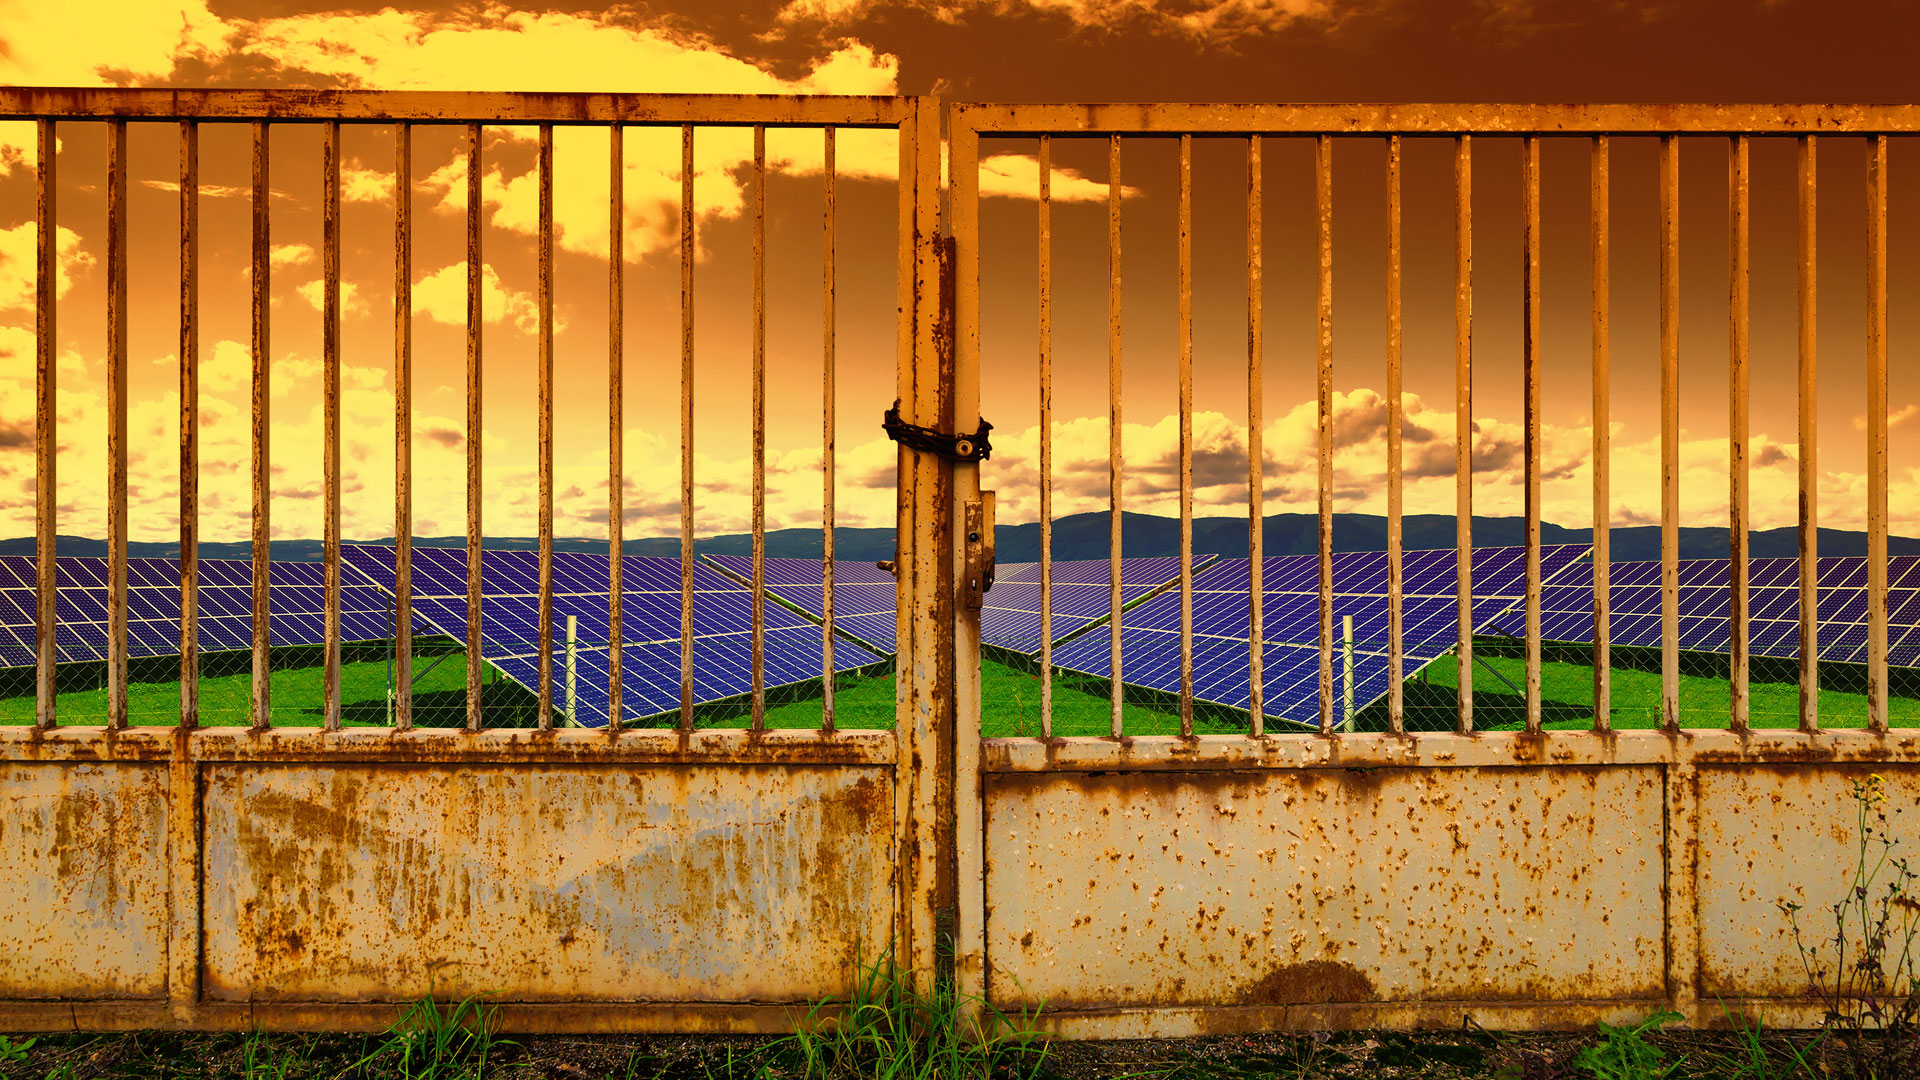 Solar energy panels at sunset, sunset sky